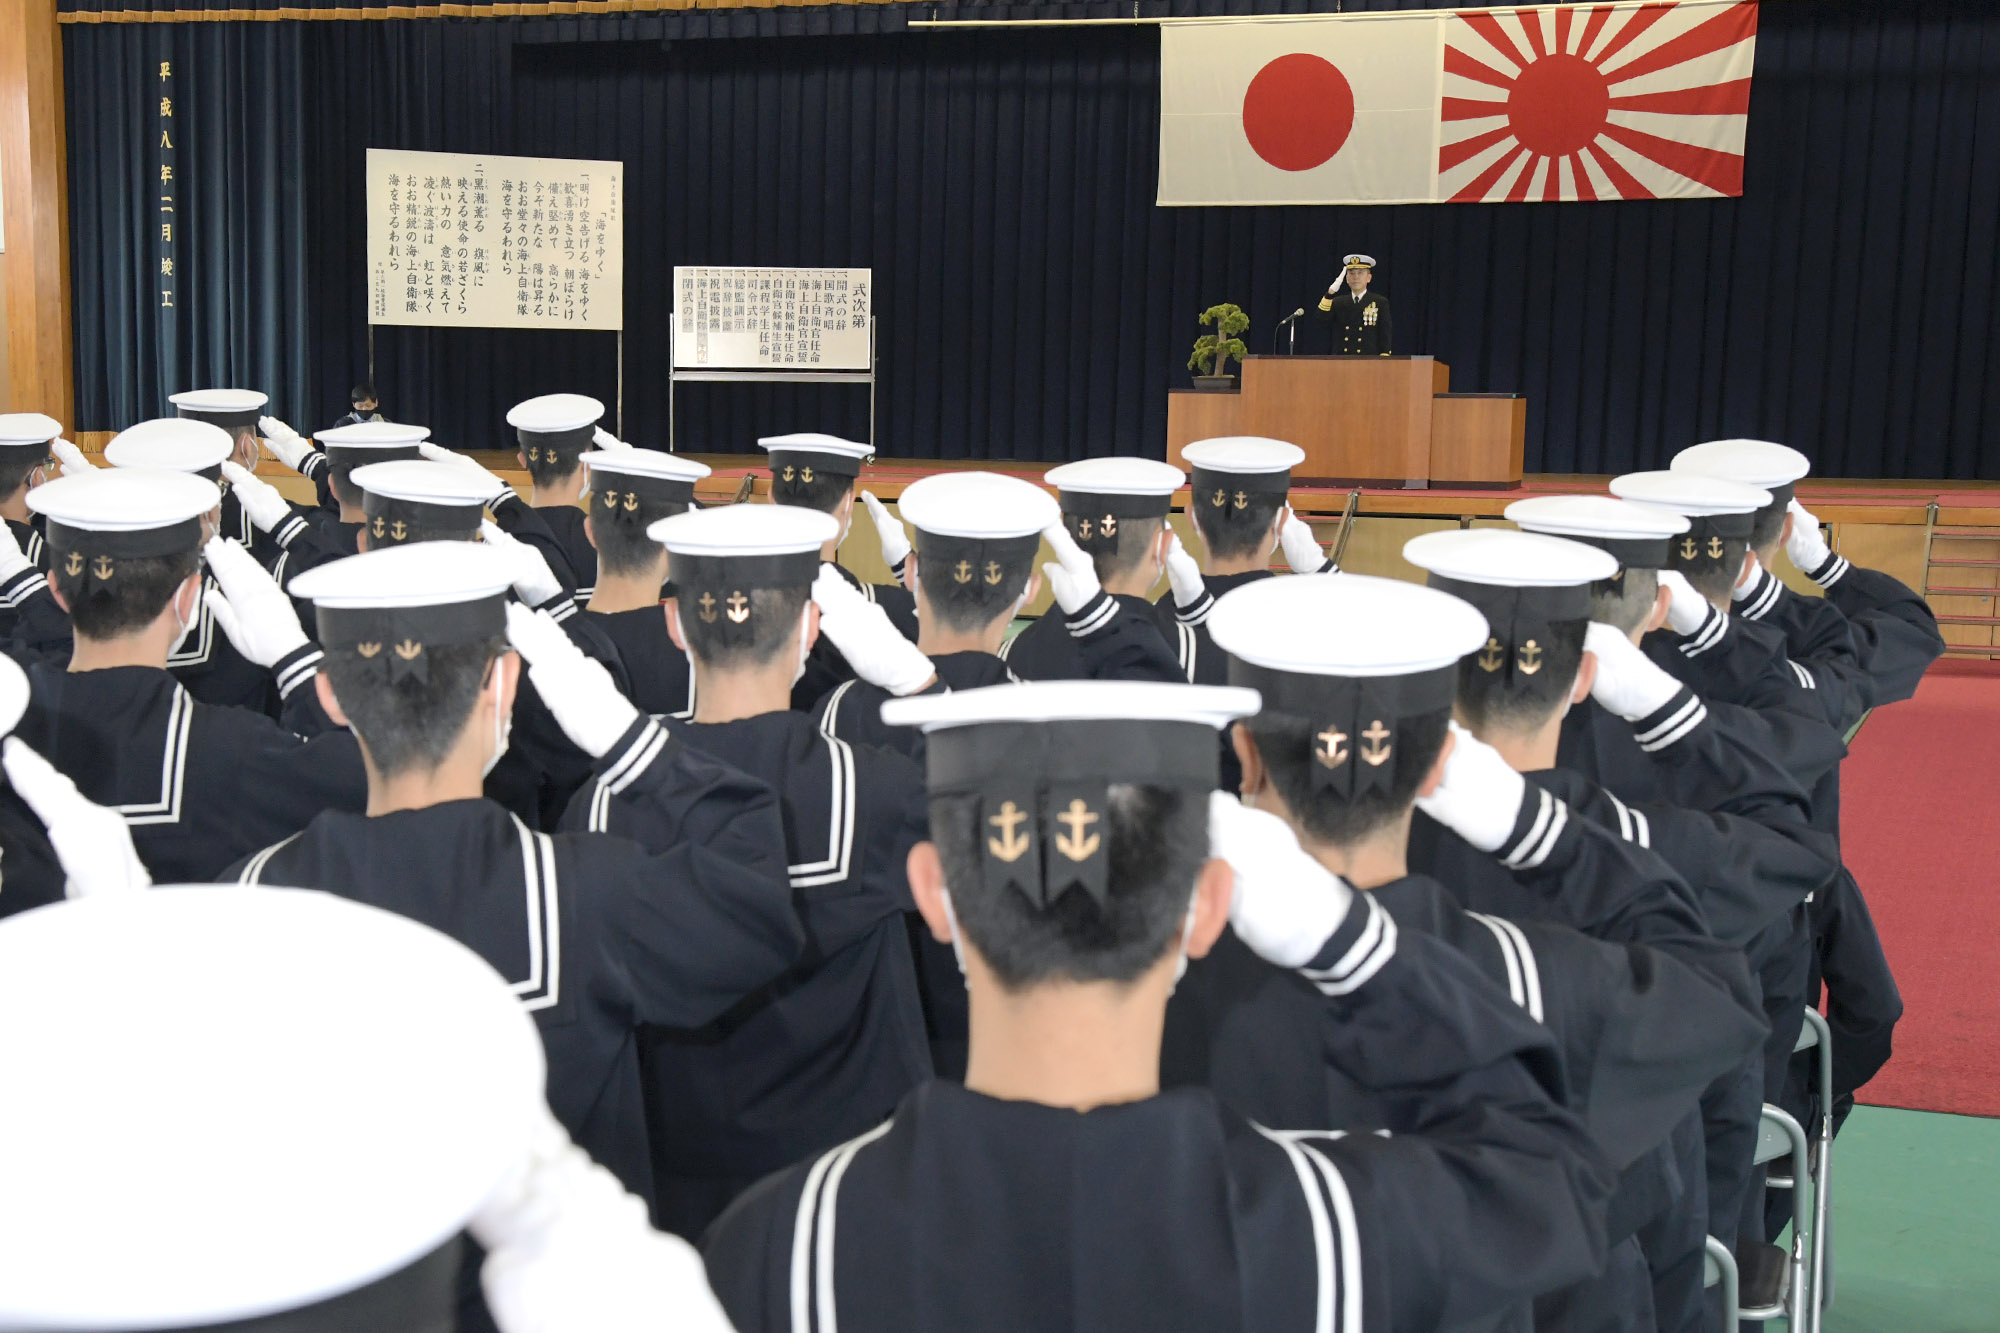 第17期 一般海曹候補生課程及び第24期 自衛官候補生課程 入隊式